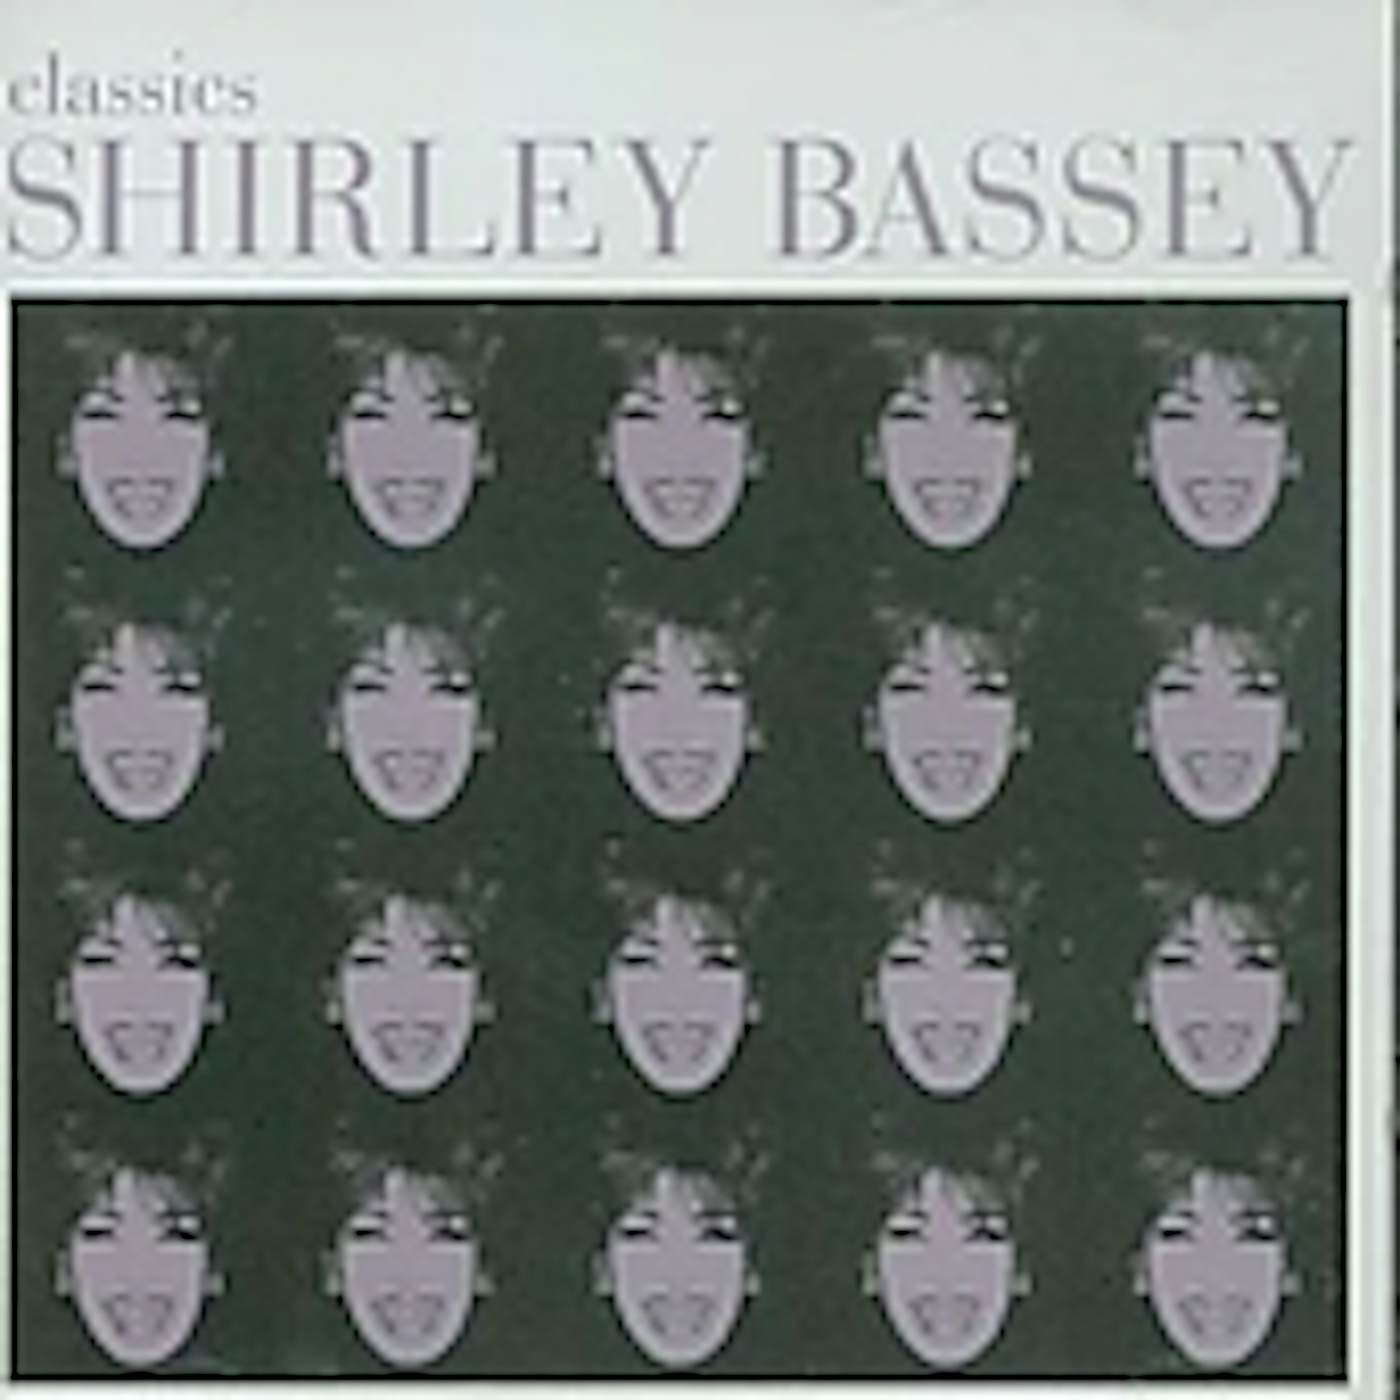 Shirley Bassey CLASSICS CD